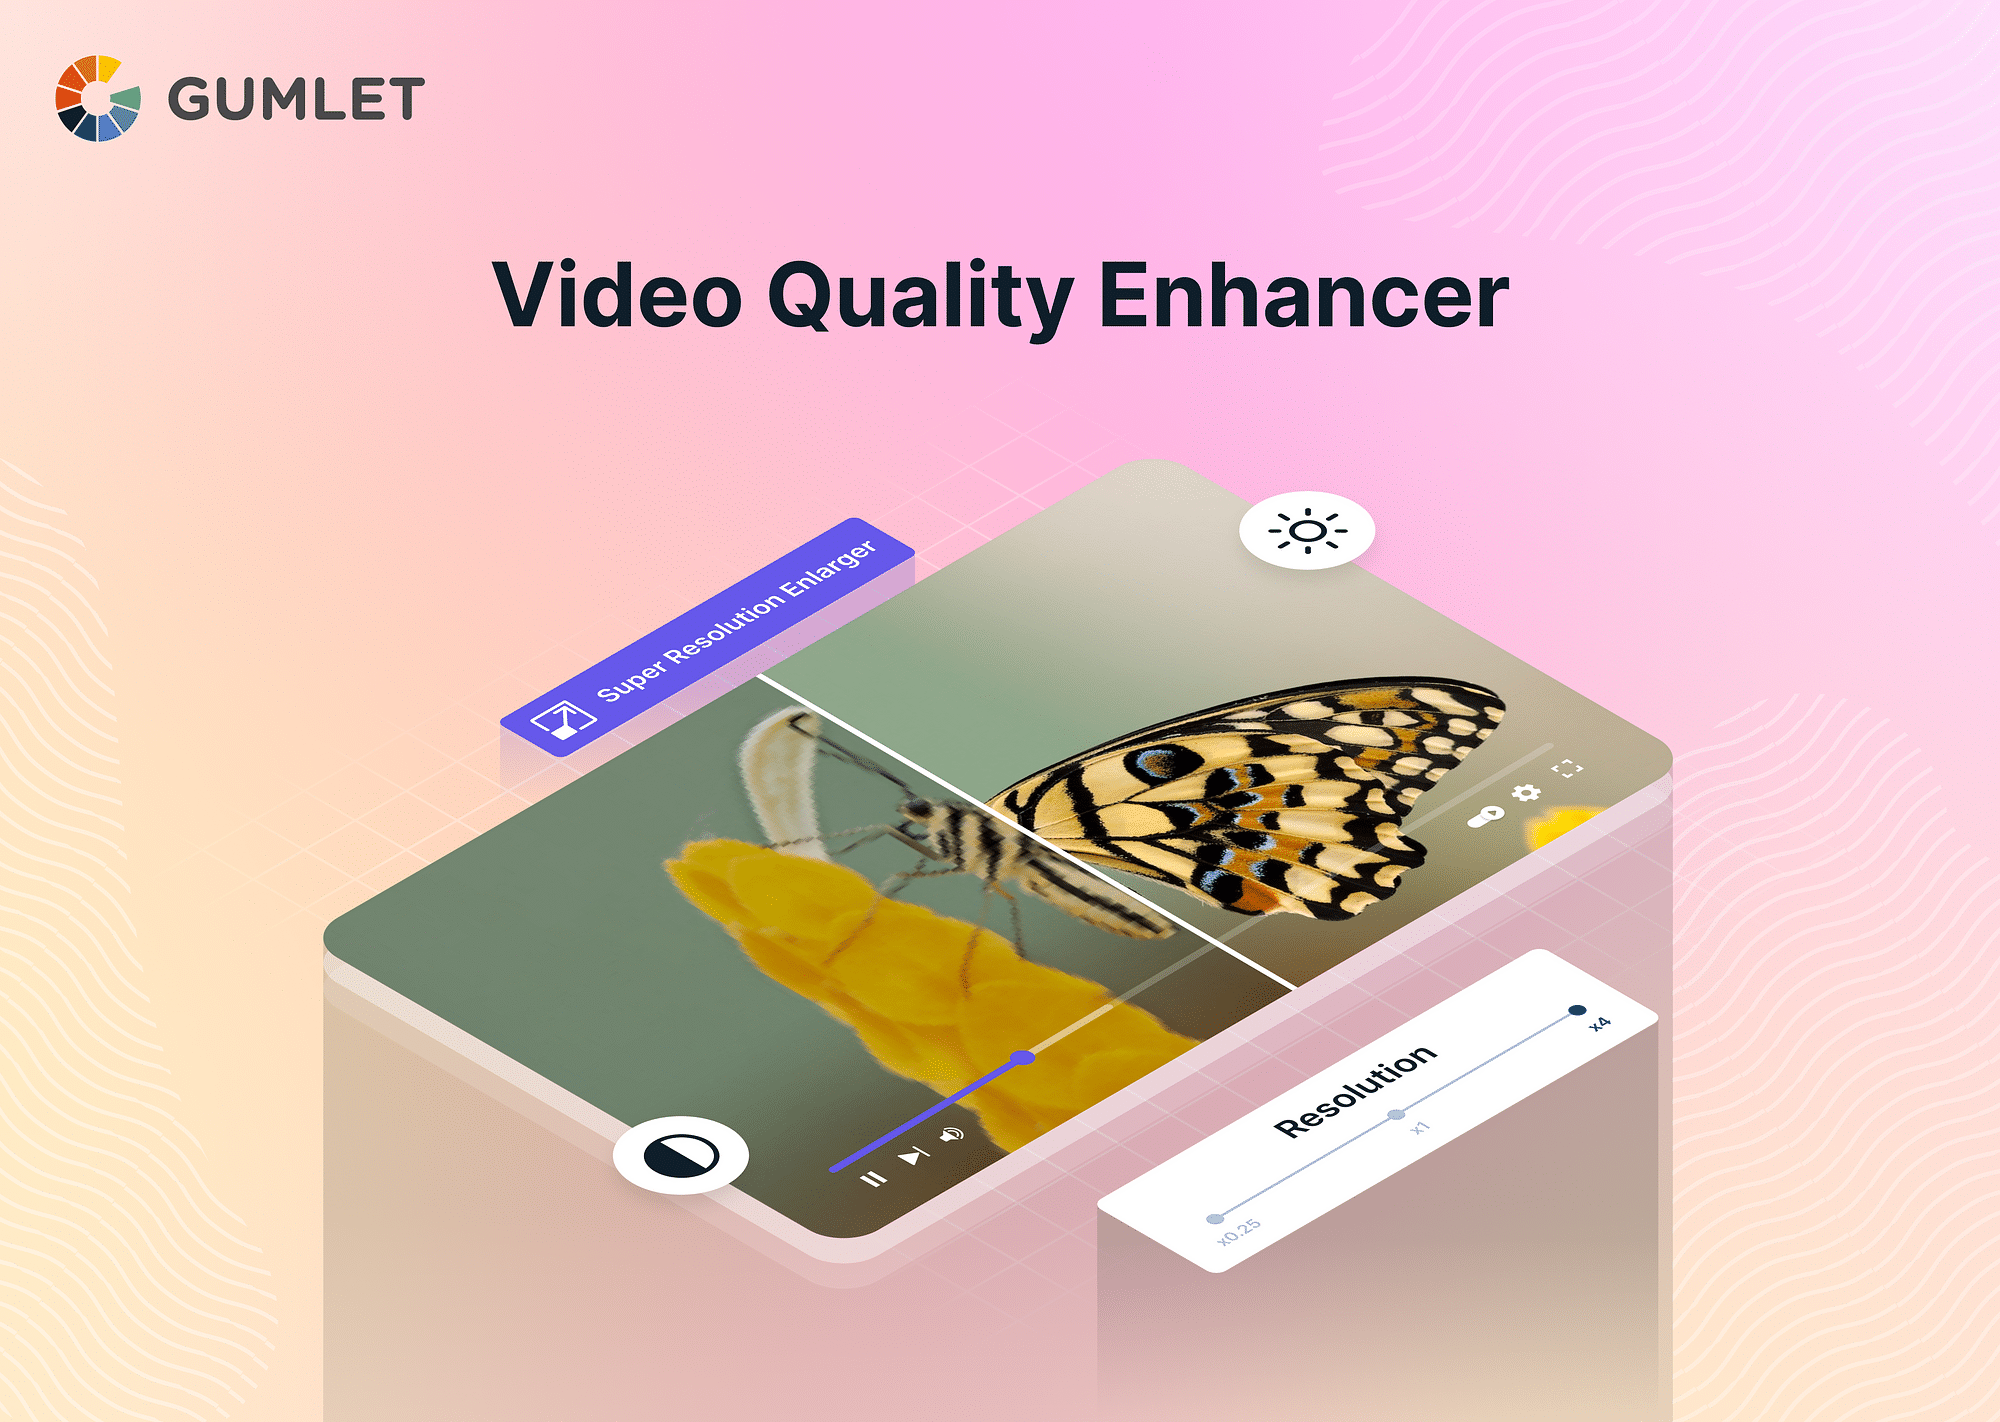 Top 5 Video Quality Enhancer Tools